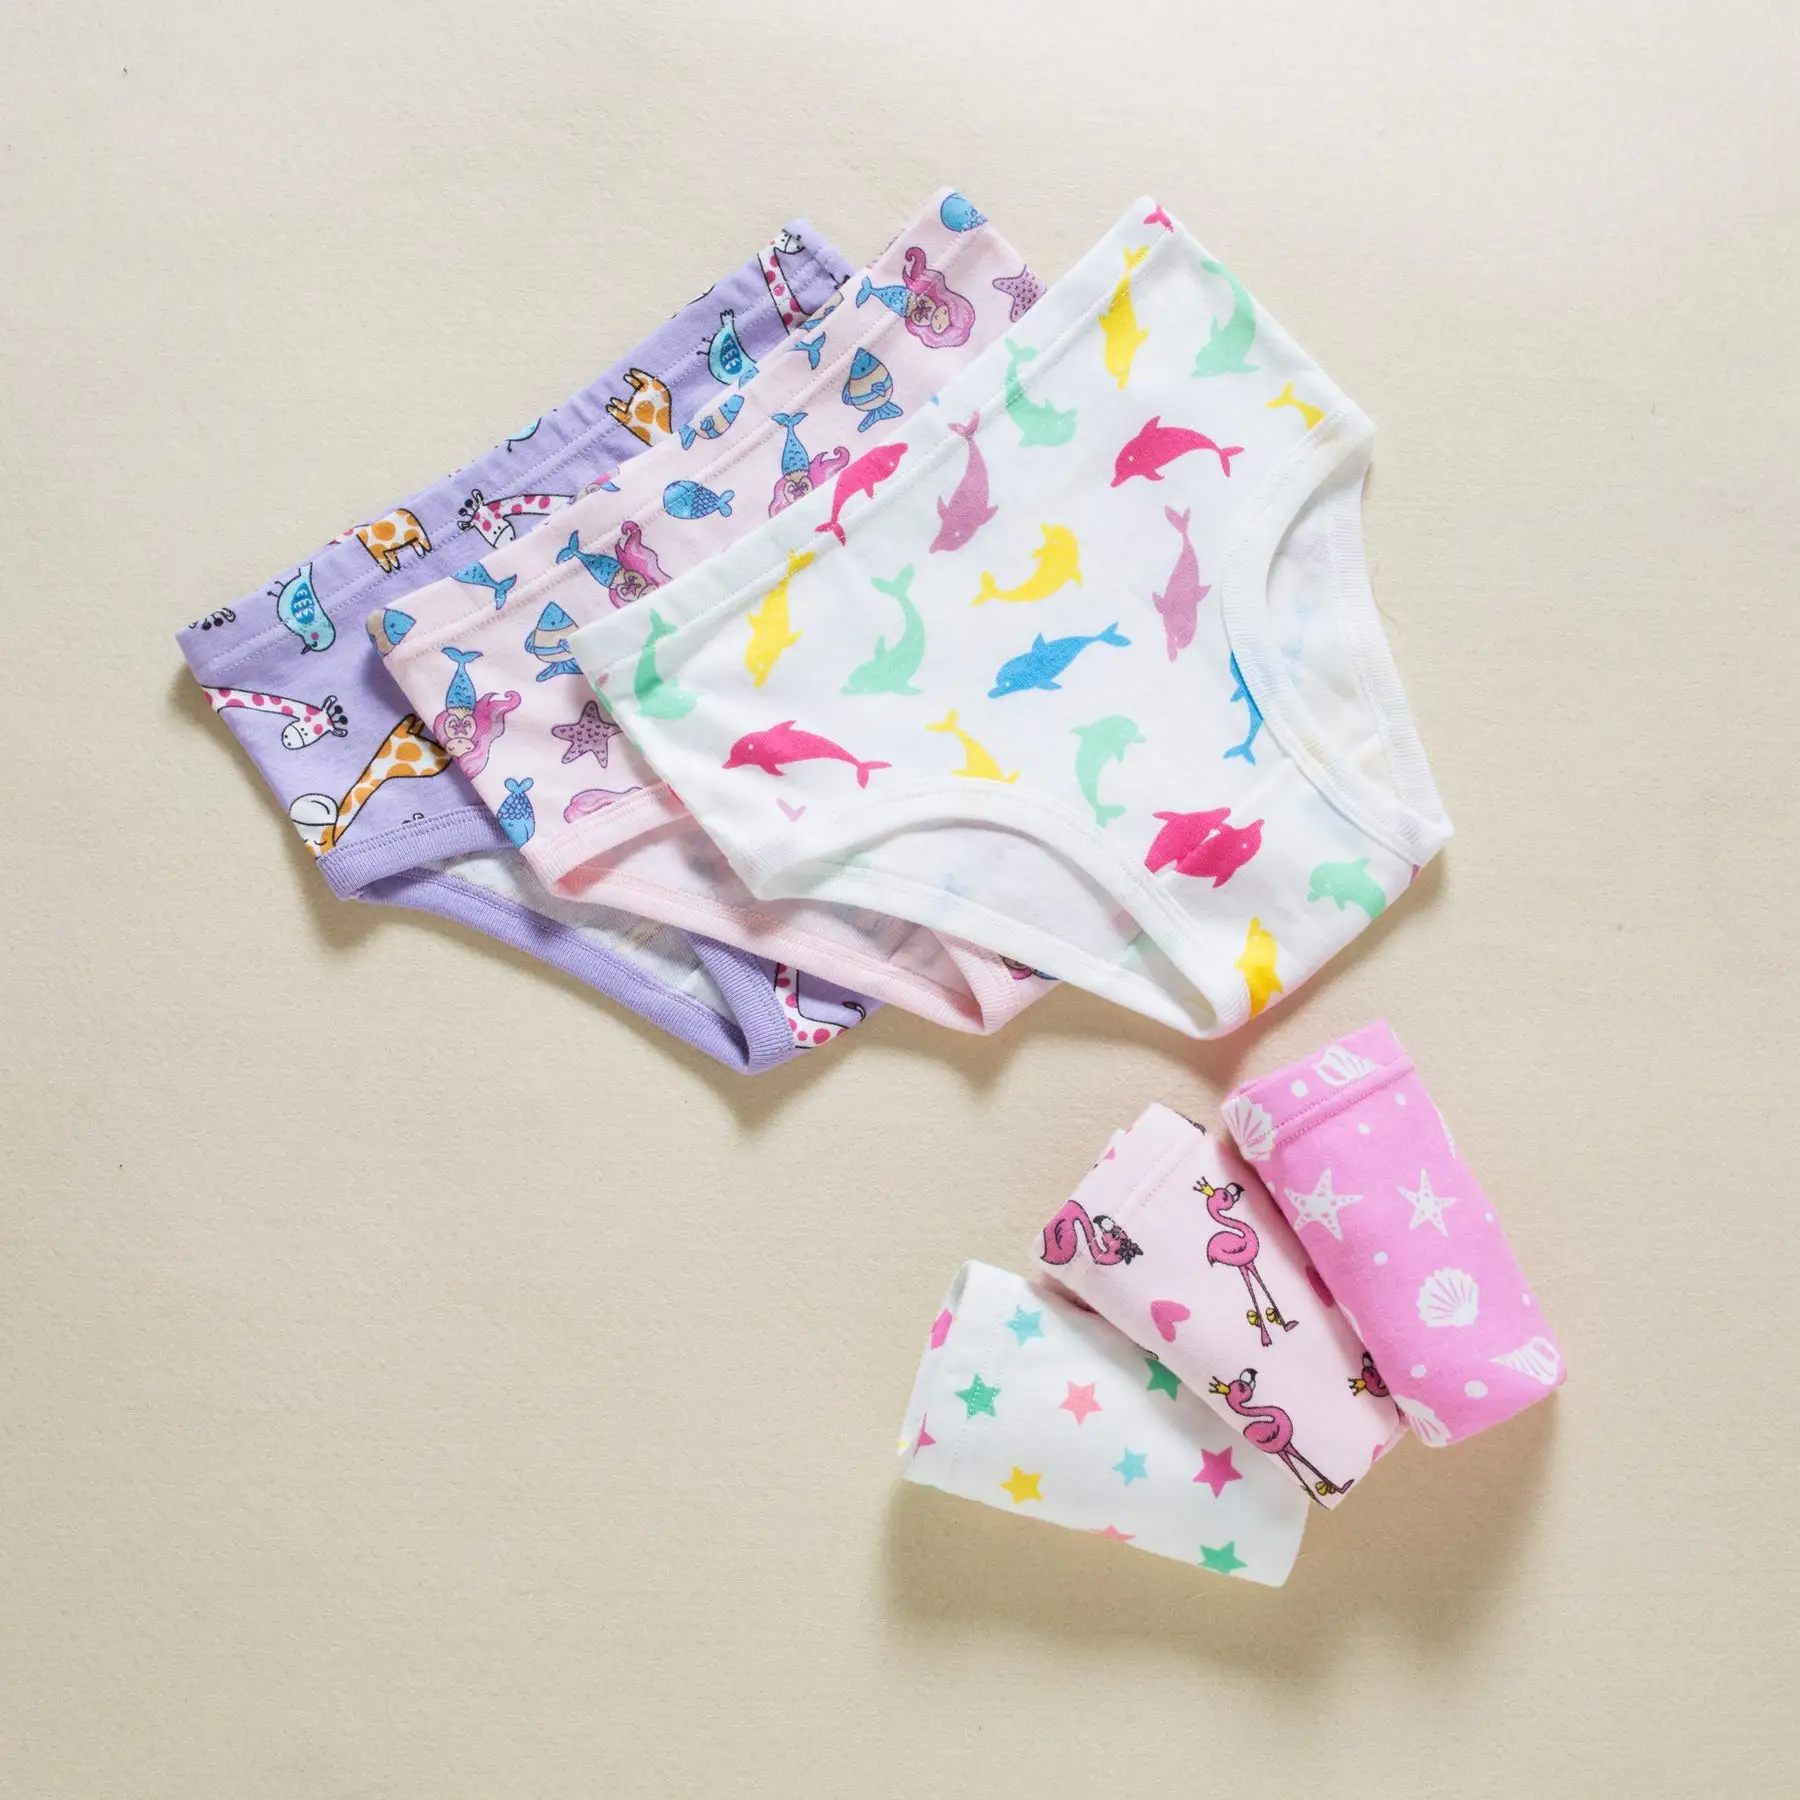 Little Girls' Cotton Underwear Kids Breathable Panty Briefs Toddler ...